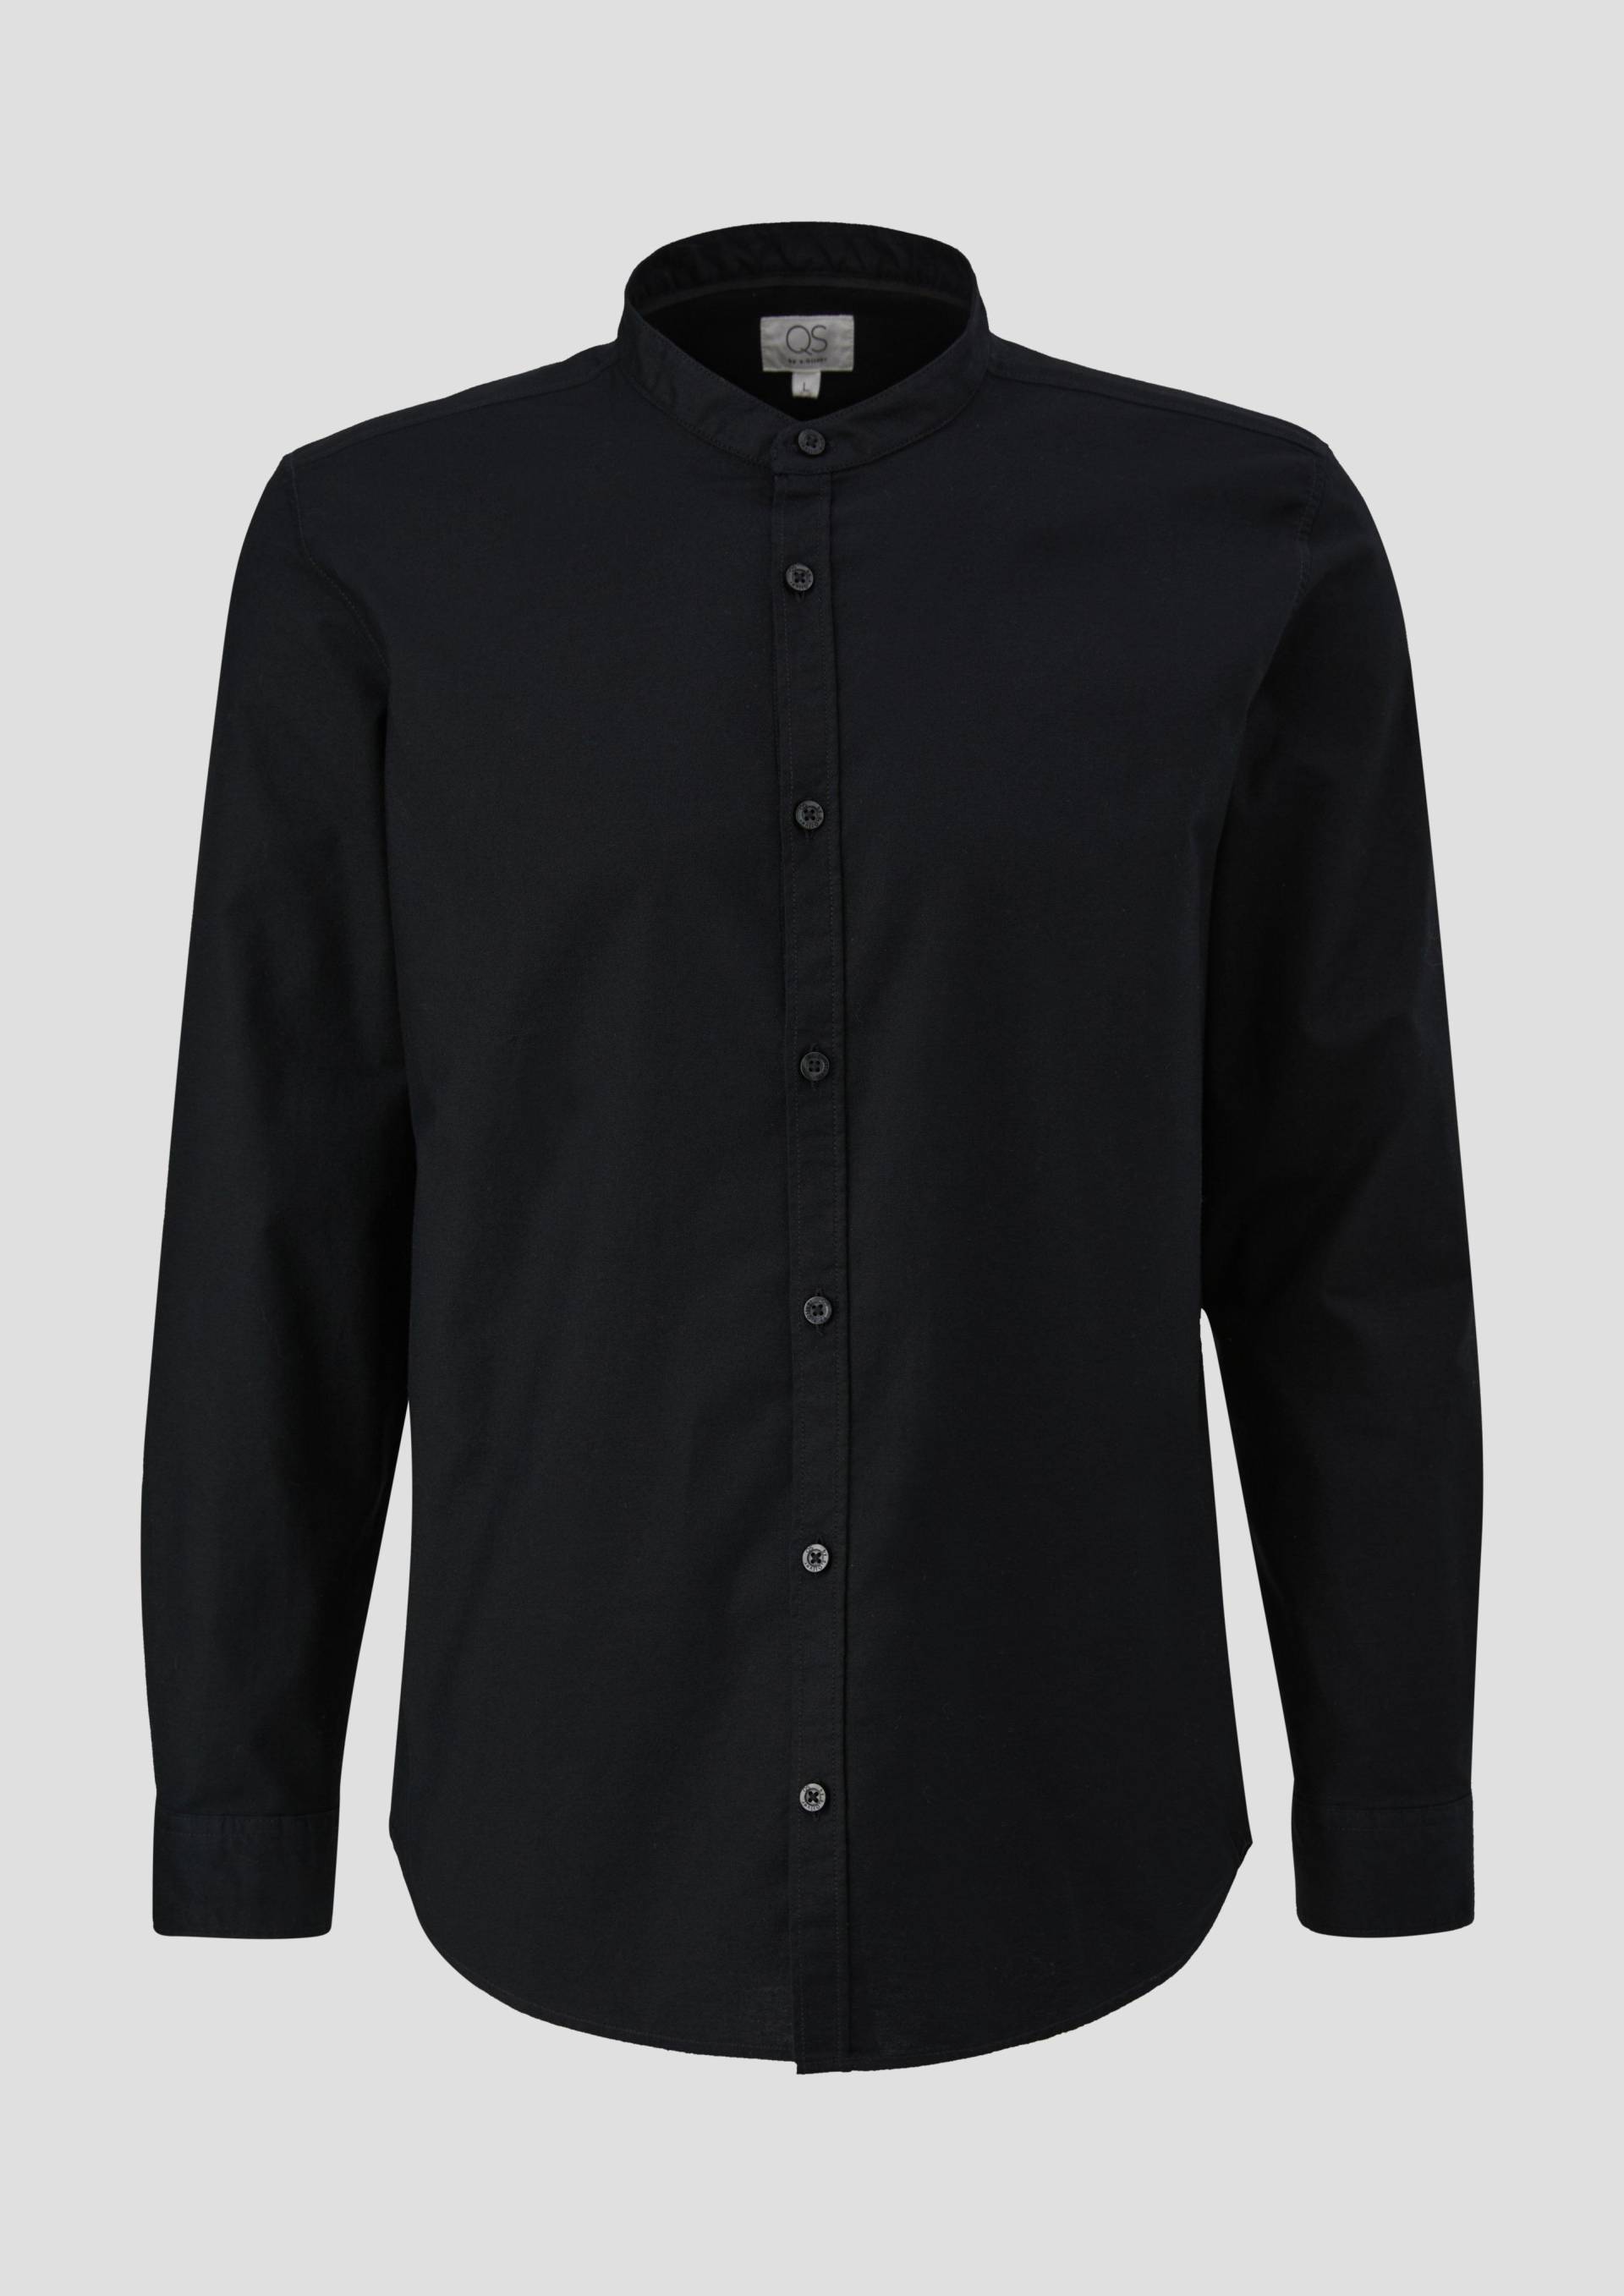 QS - Baumwollhemd in Garment Dye, Herren, schwarz von QS